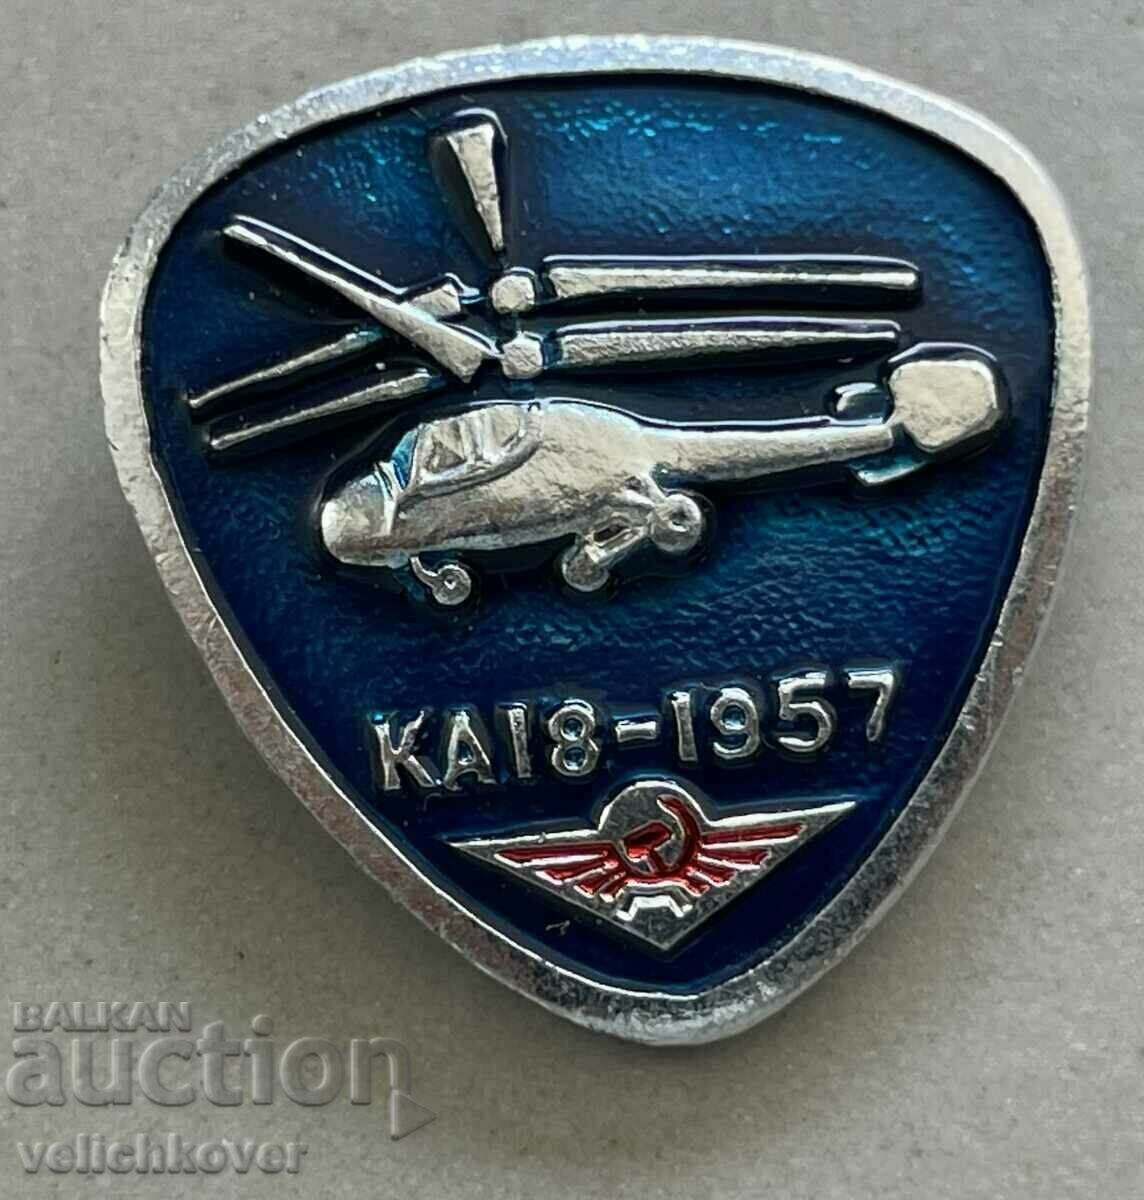 35369 ελικόπτερο με διακριτικά ΕΣΣΔ μοντέλο KA 18 1957.